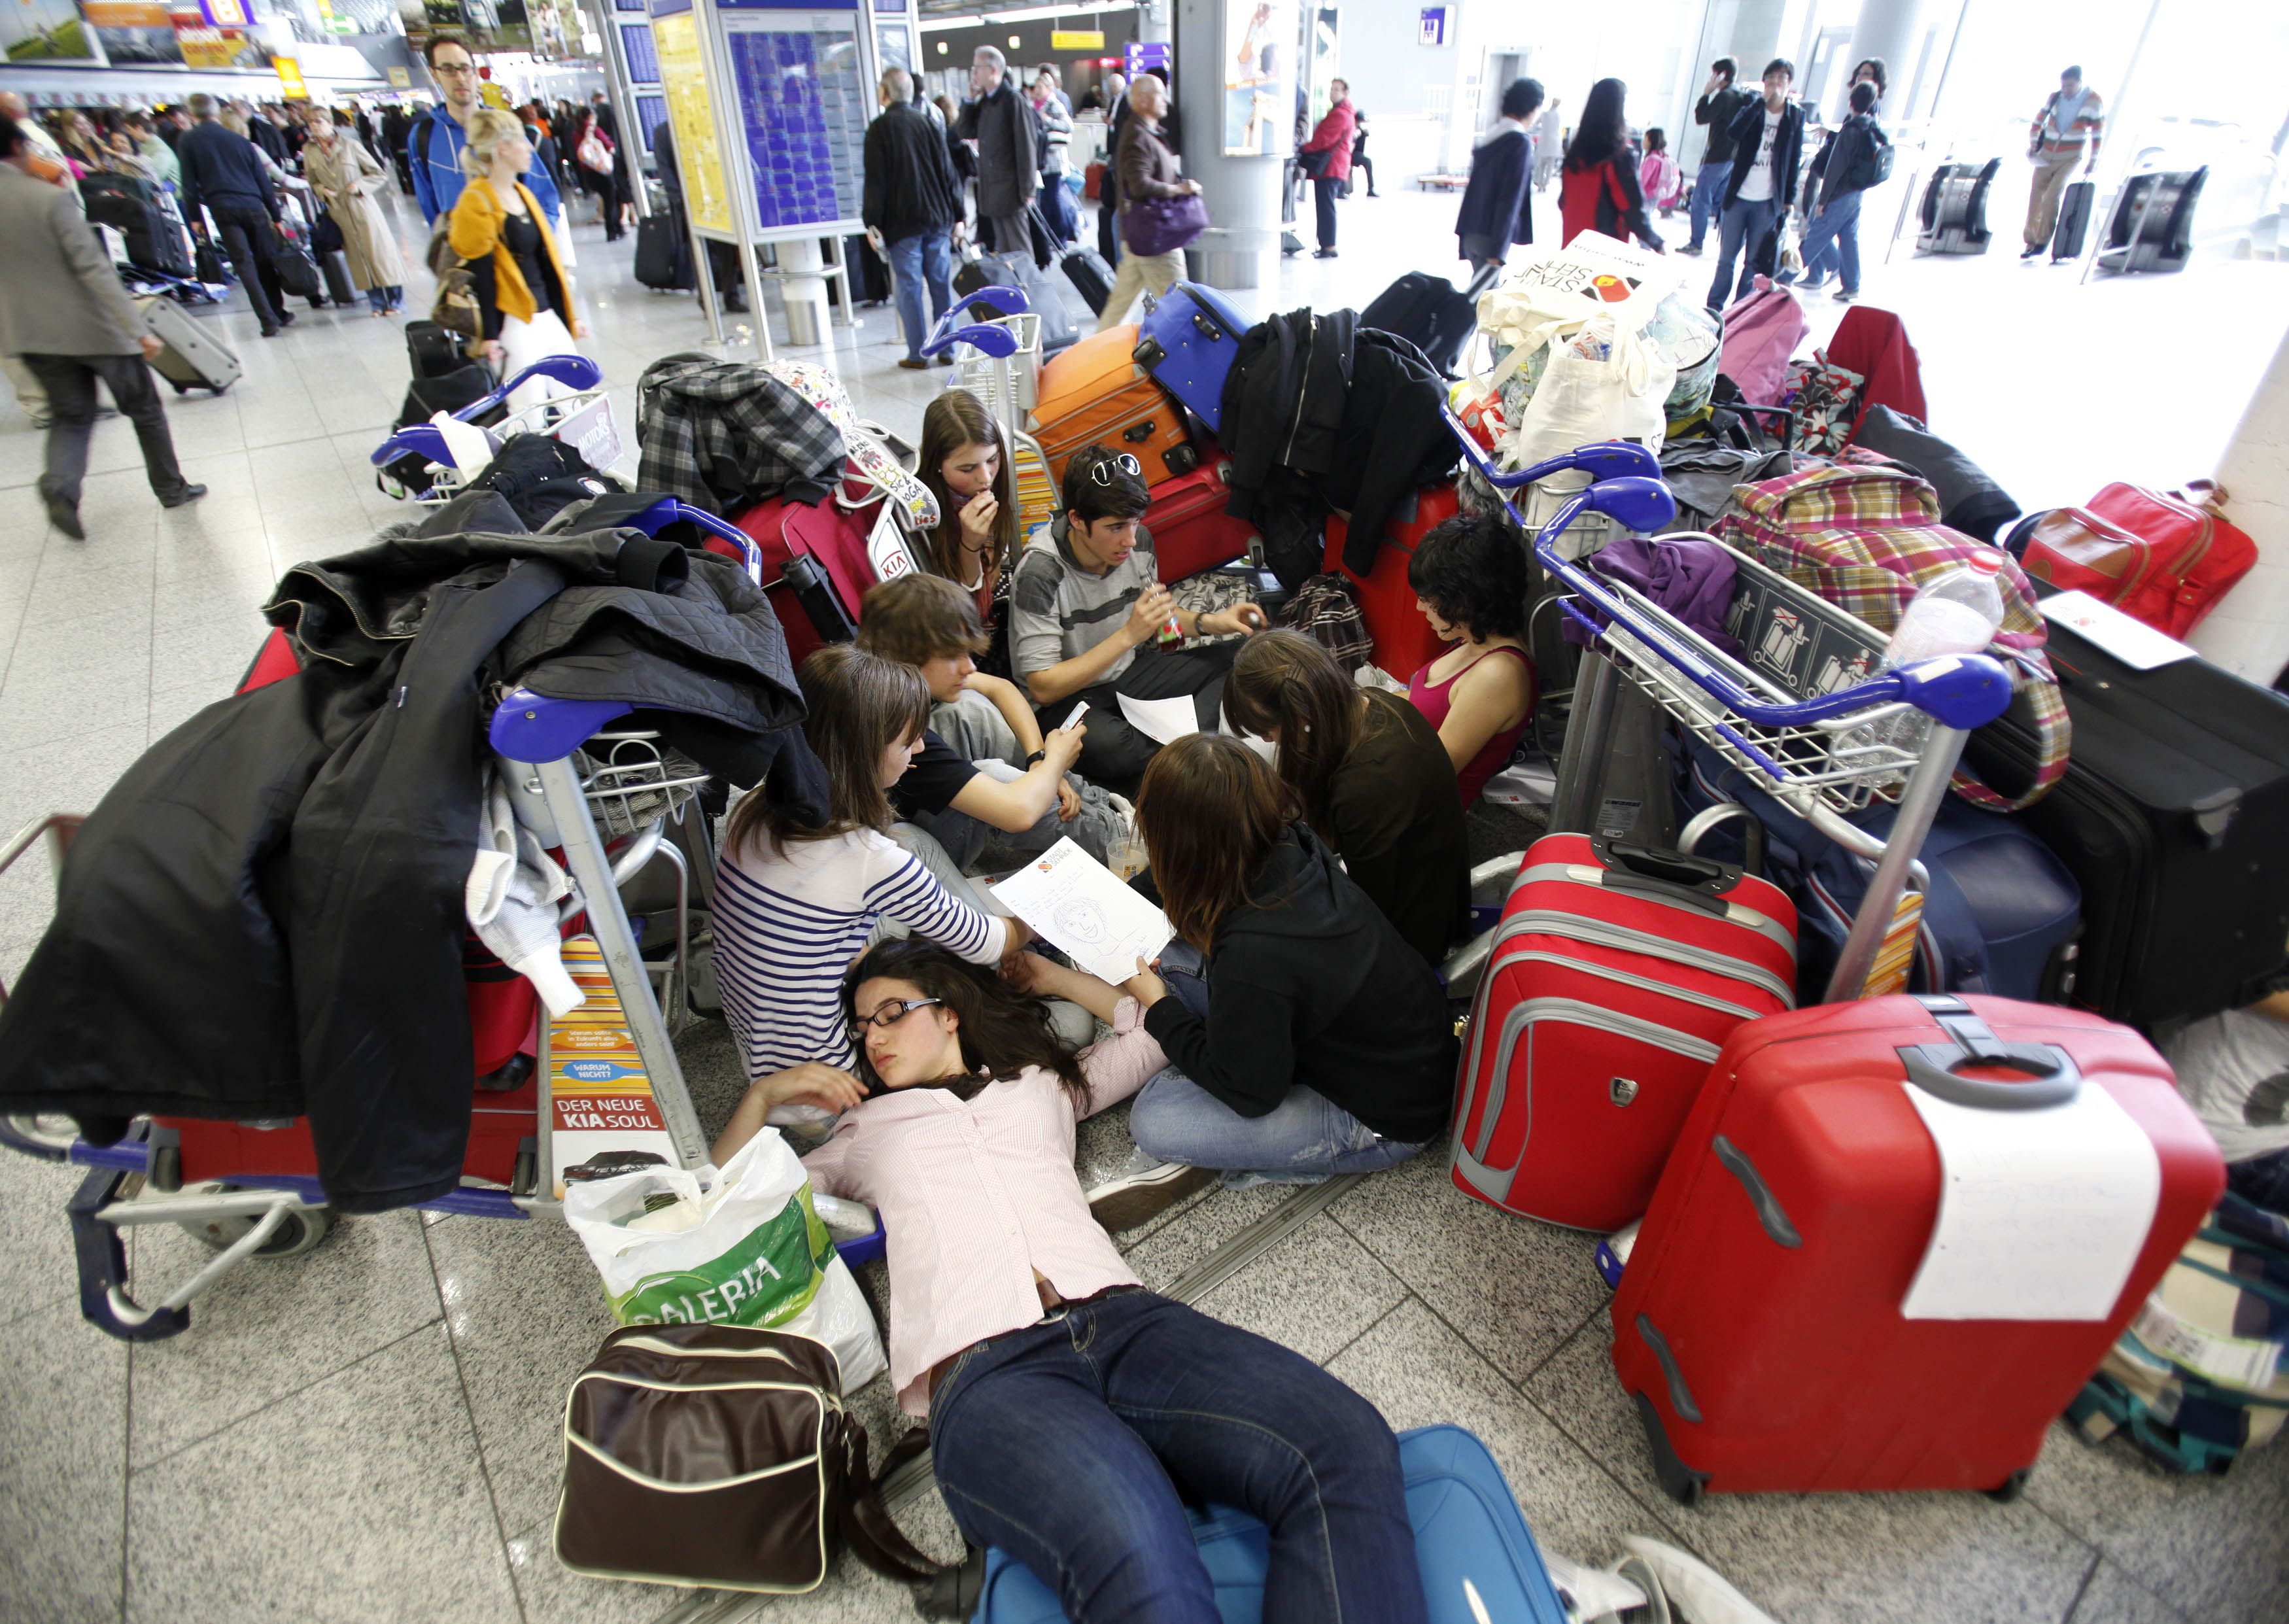 Resenärer över hela världen, men främst i Europa, drabbas dock hårt. Vissa sover på flygplatsen, andra tar taxi från Spanien till Sverige. 